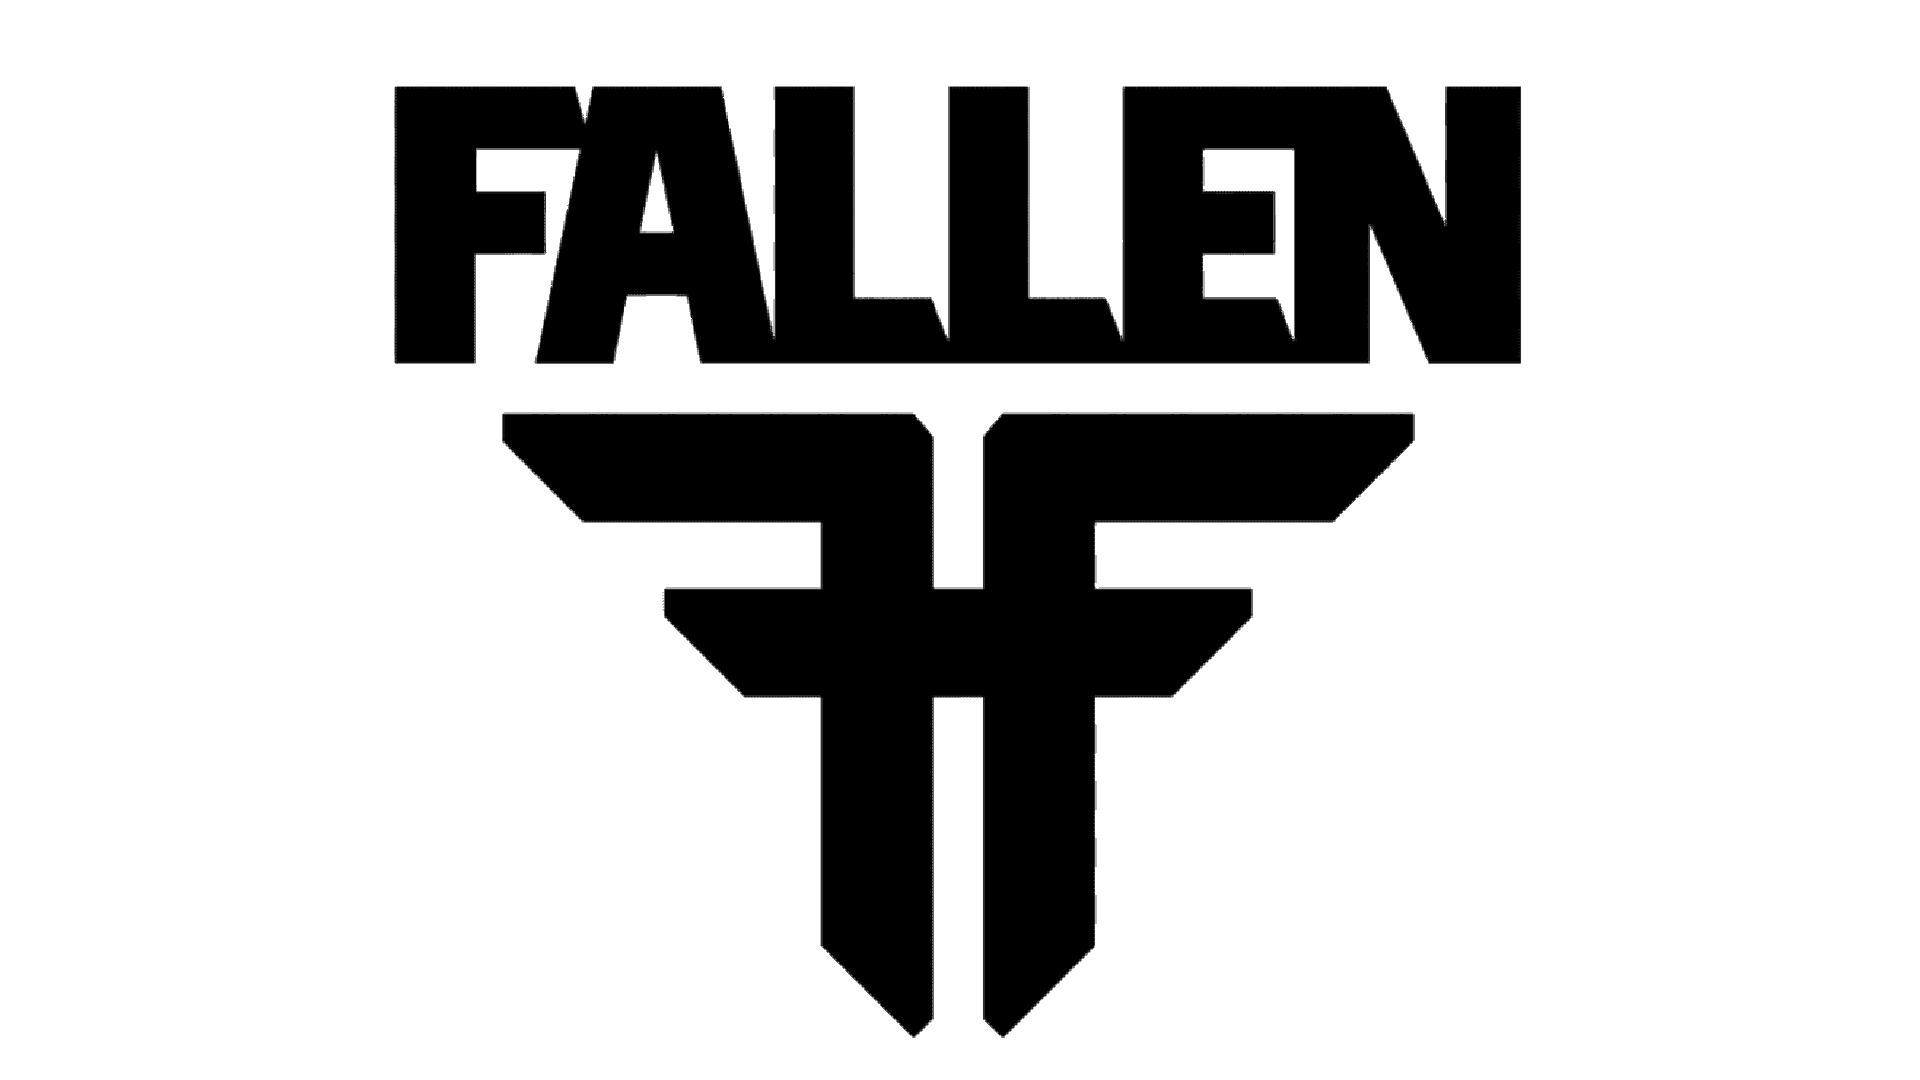 Brand: Fallen